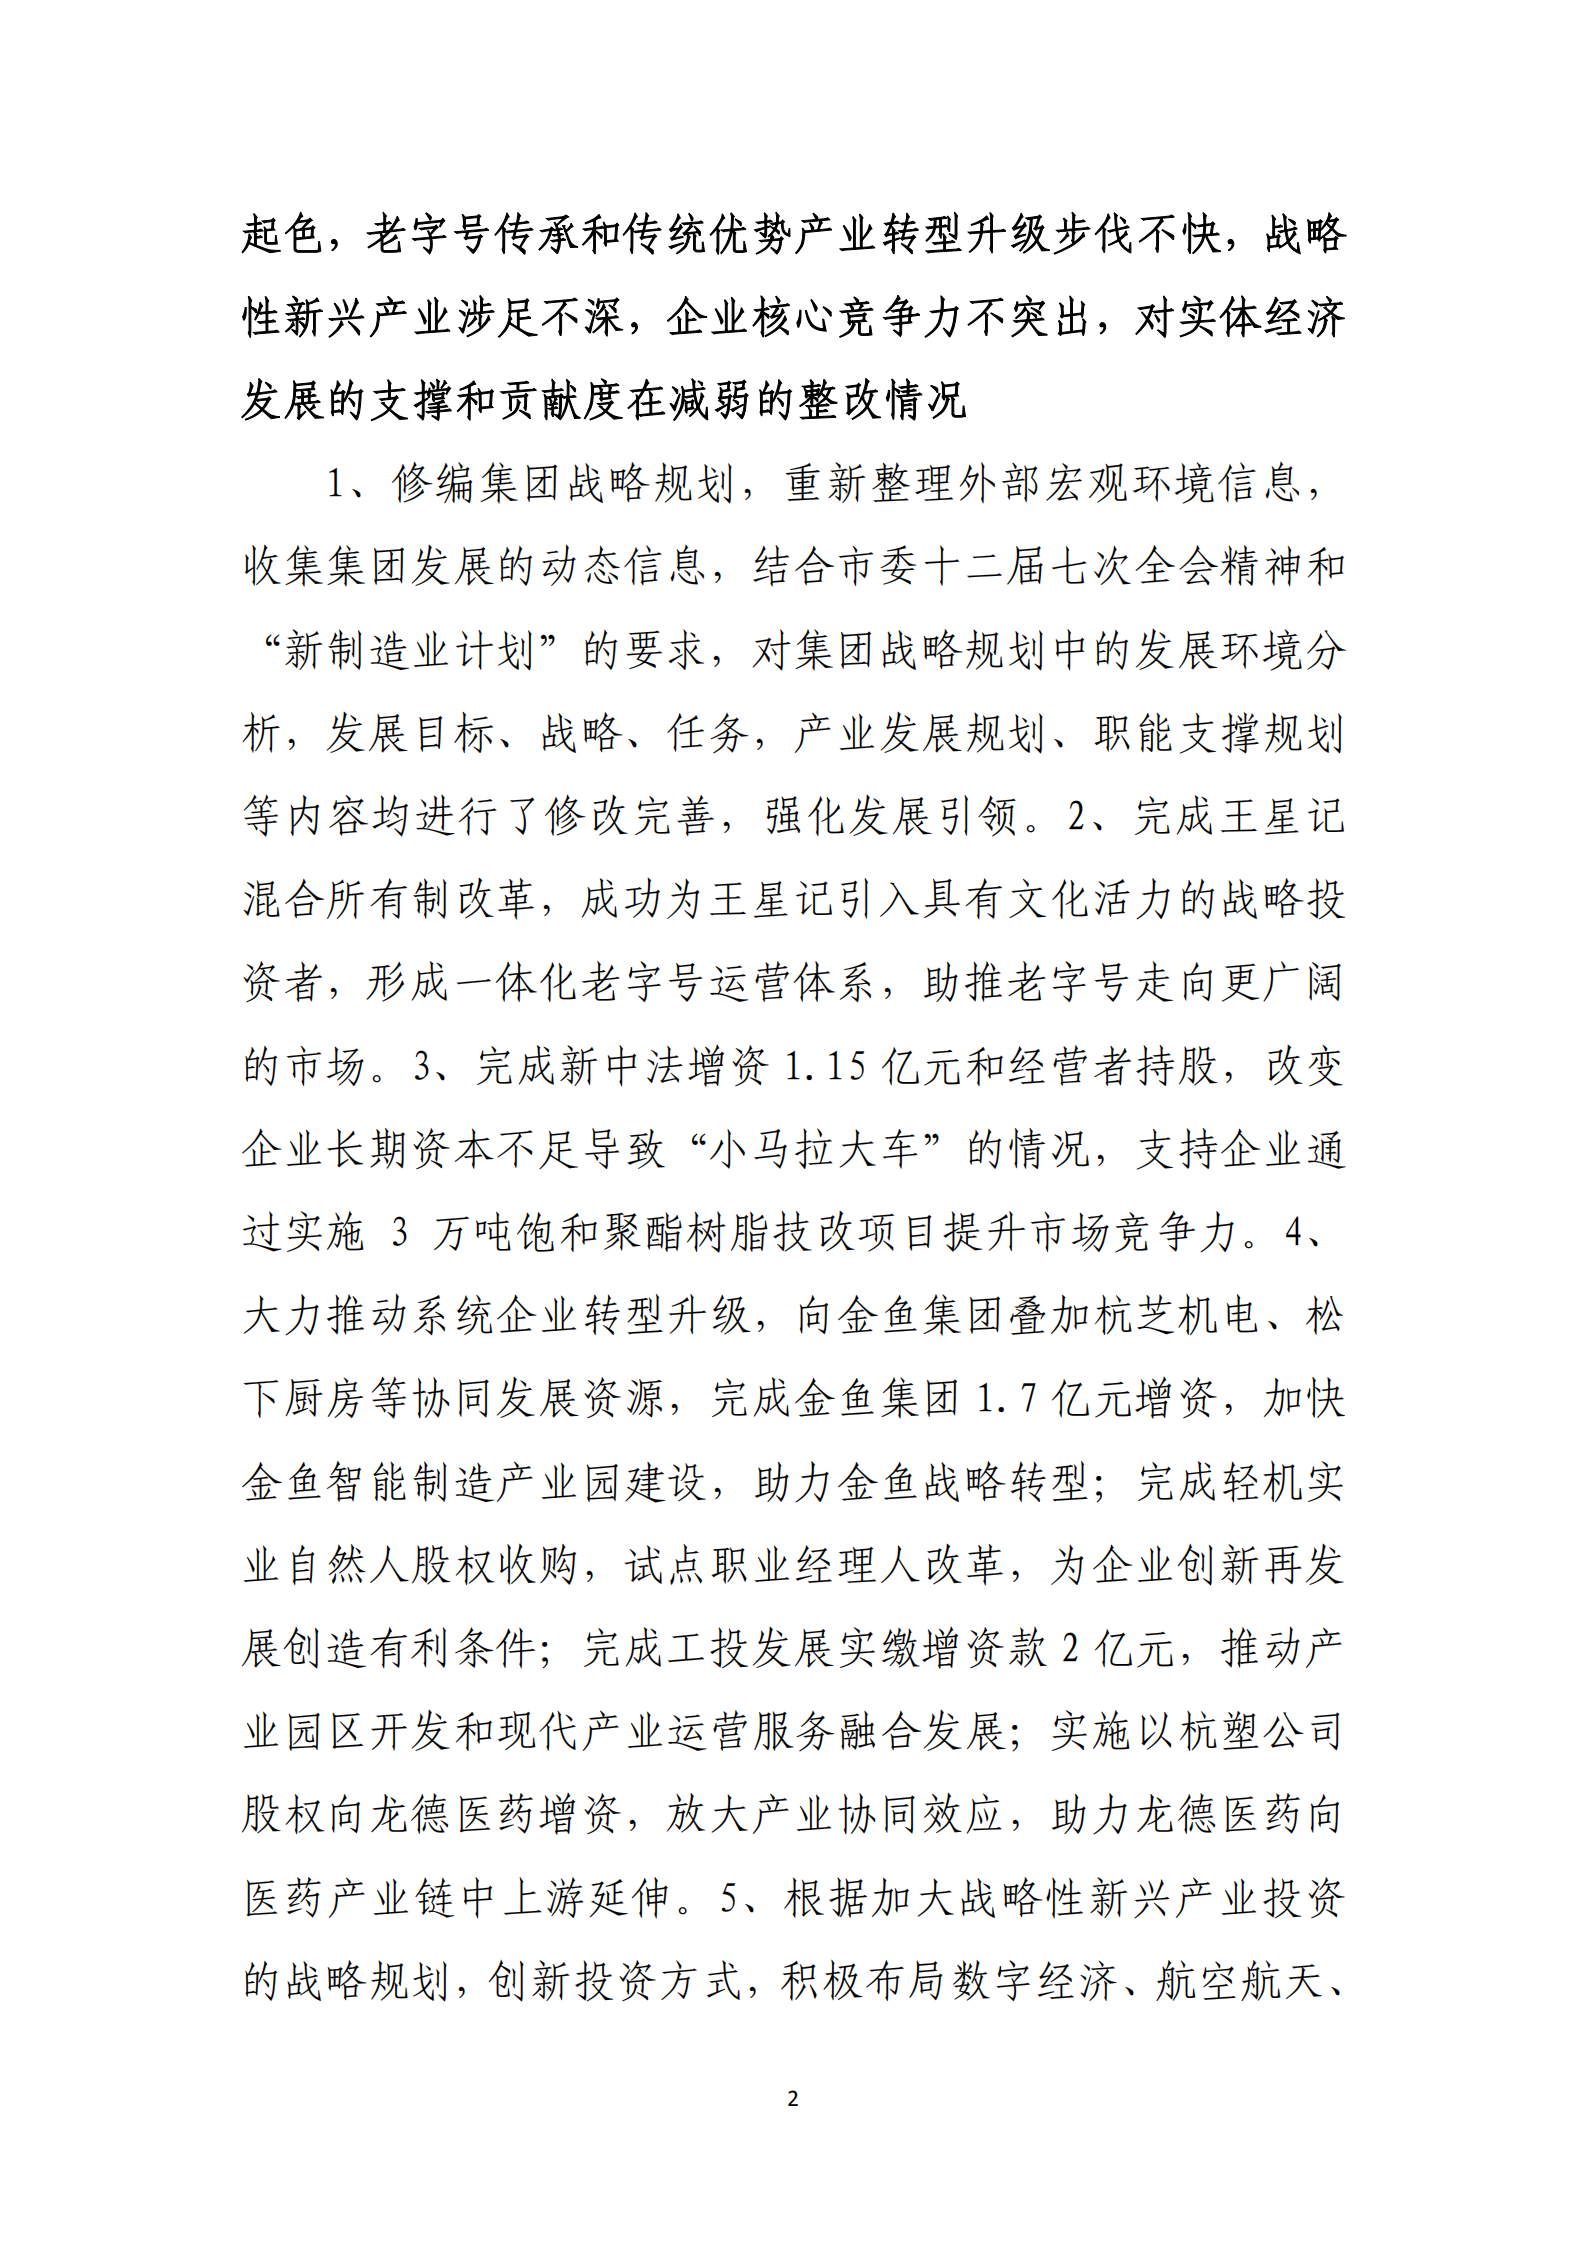 【体育365官方网站】中国有限公司党委关于巡察整改情况的通报_01.png